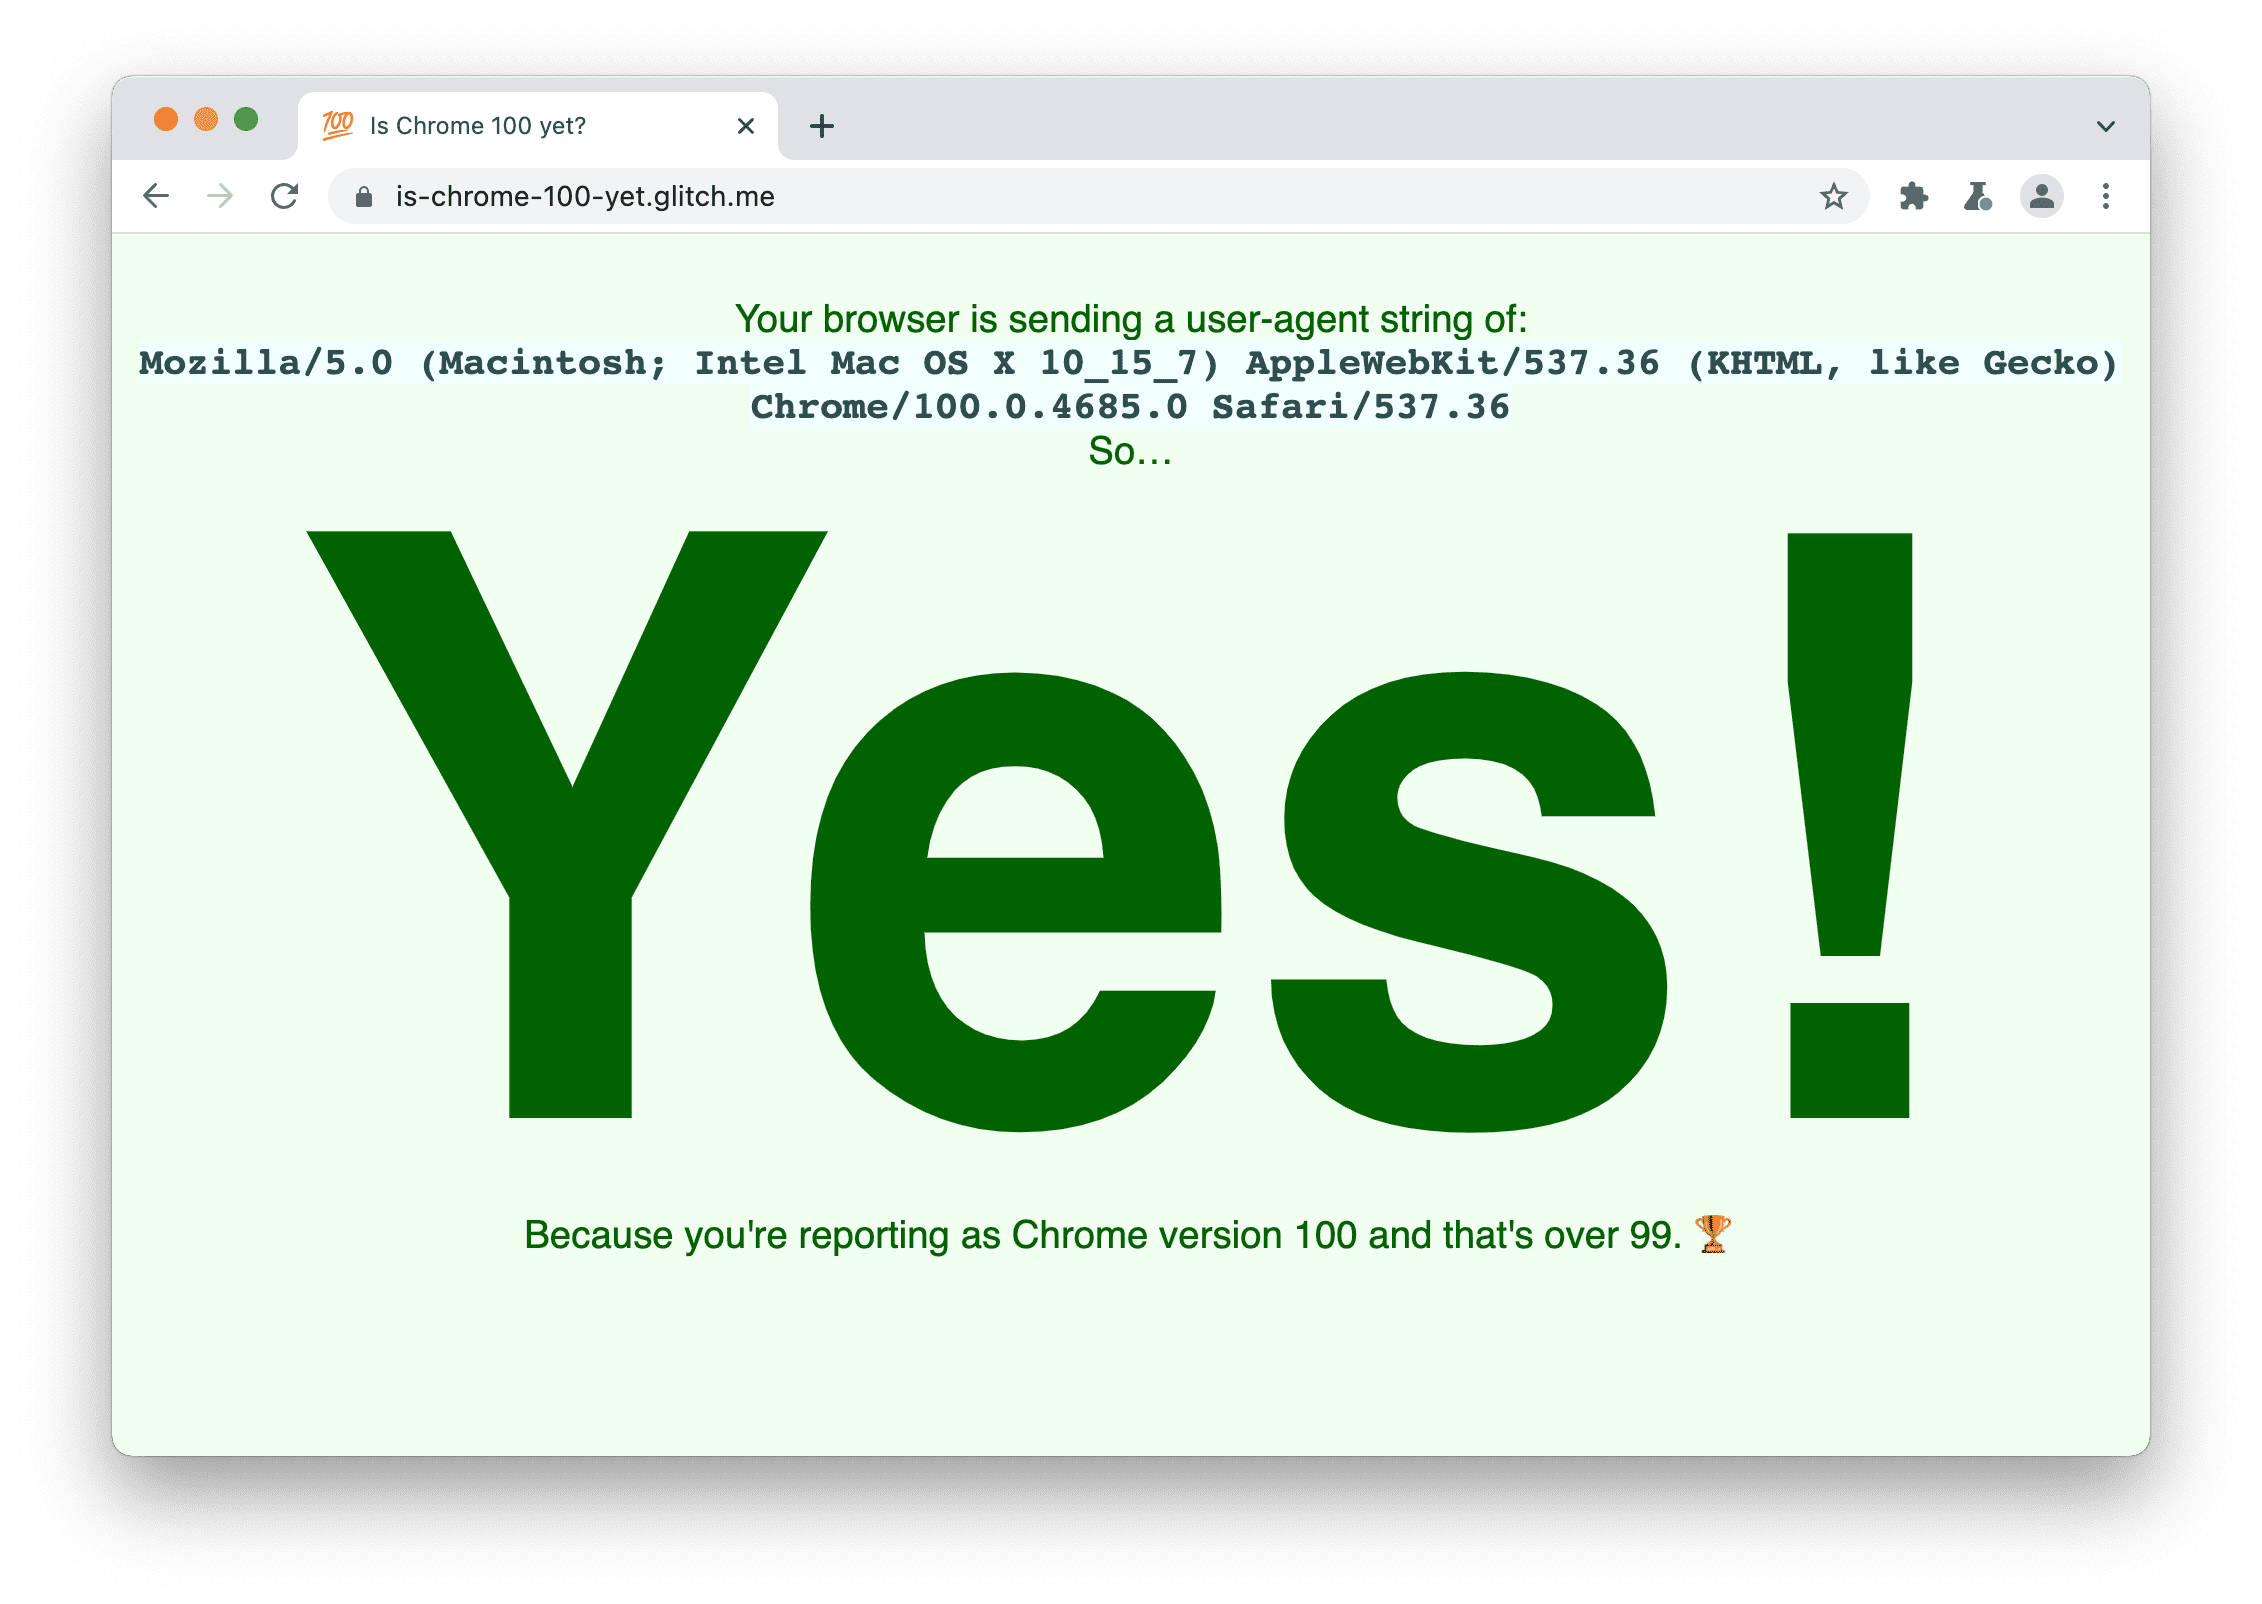 Situs yang memeriksa apakah browser mengirimkan string Agen Pengguna 100. Notifikasi ditampilkan: Ya, karena Anda melaporkan Chrome versi 100 dan versi tersebut lebih dari 99.